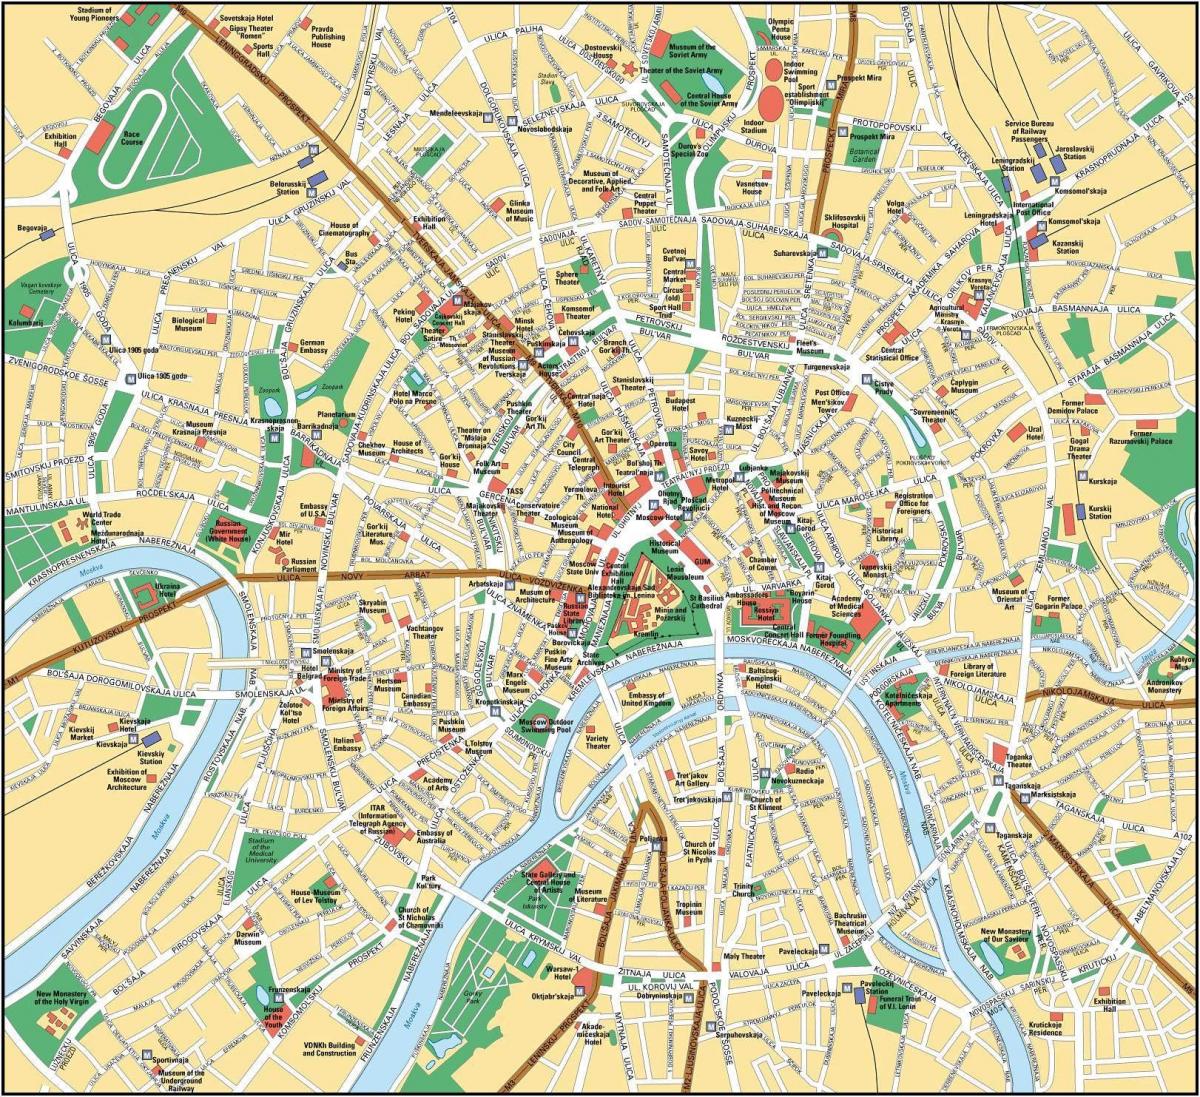 moskva karta Moskva karta på engelska   Karta över Moskva i engelska (Ryssland) moskva karta